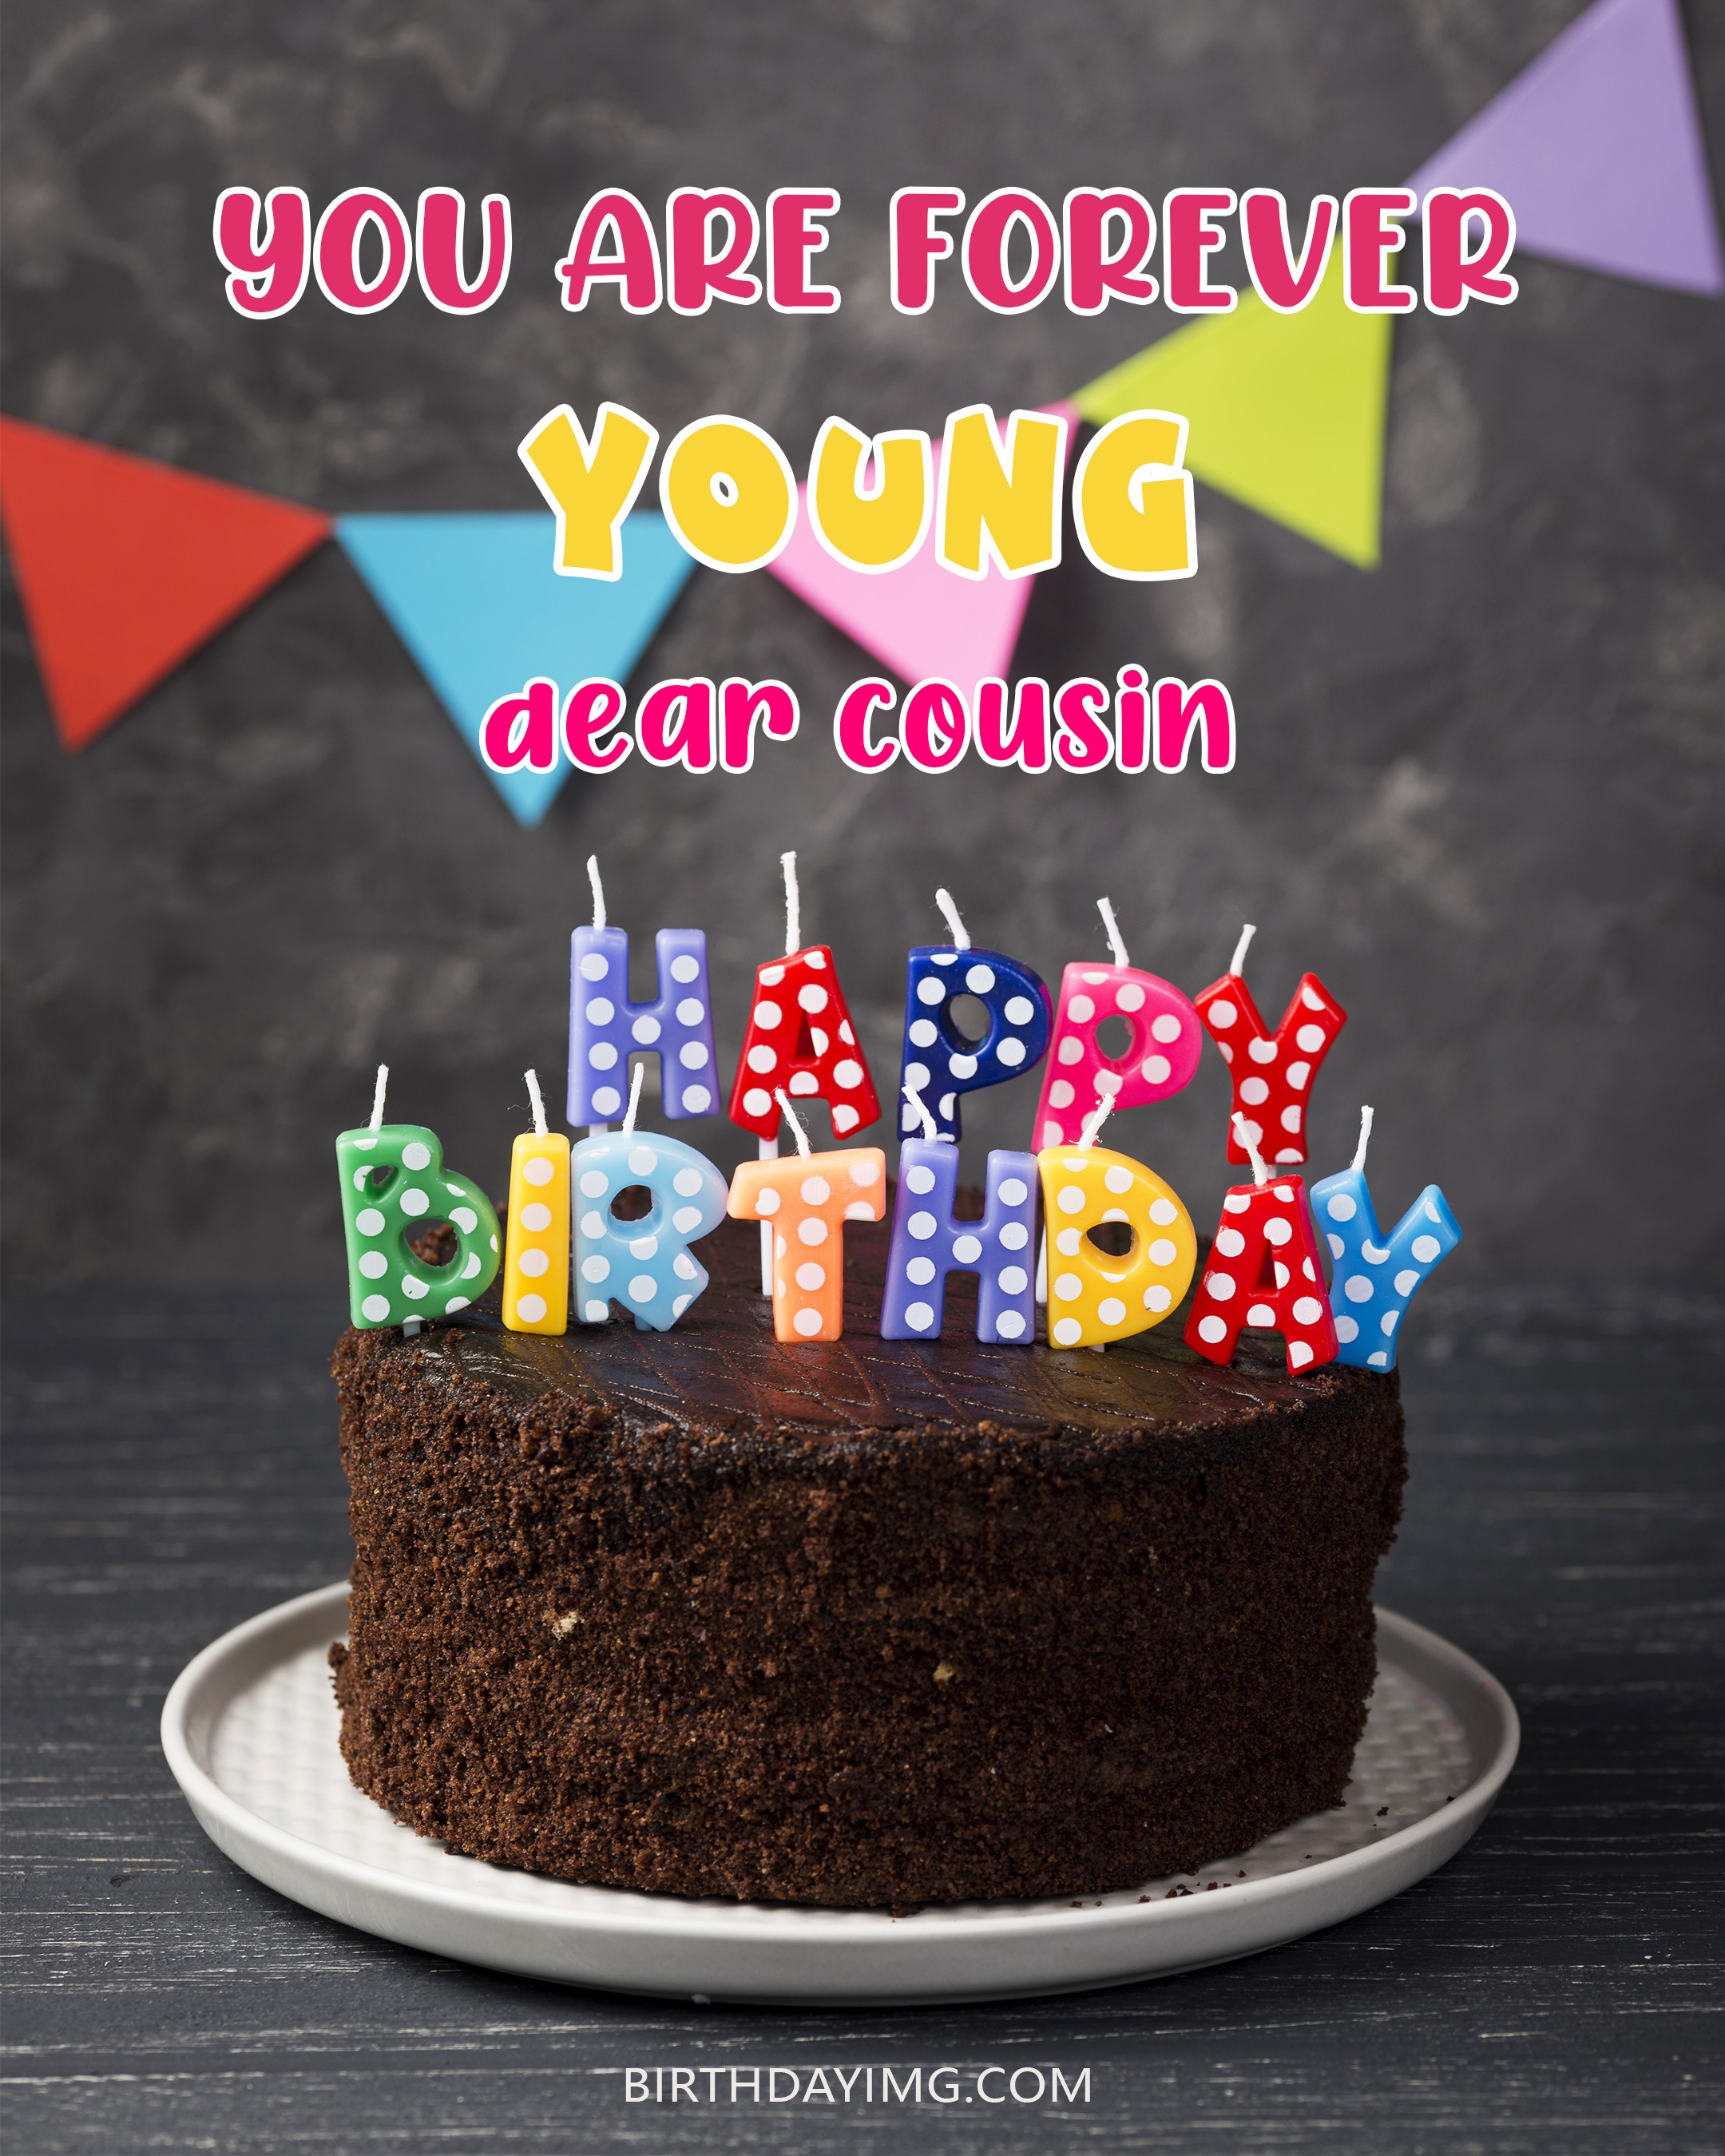 happy birthday cousin cake